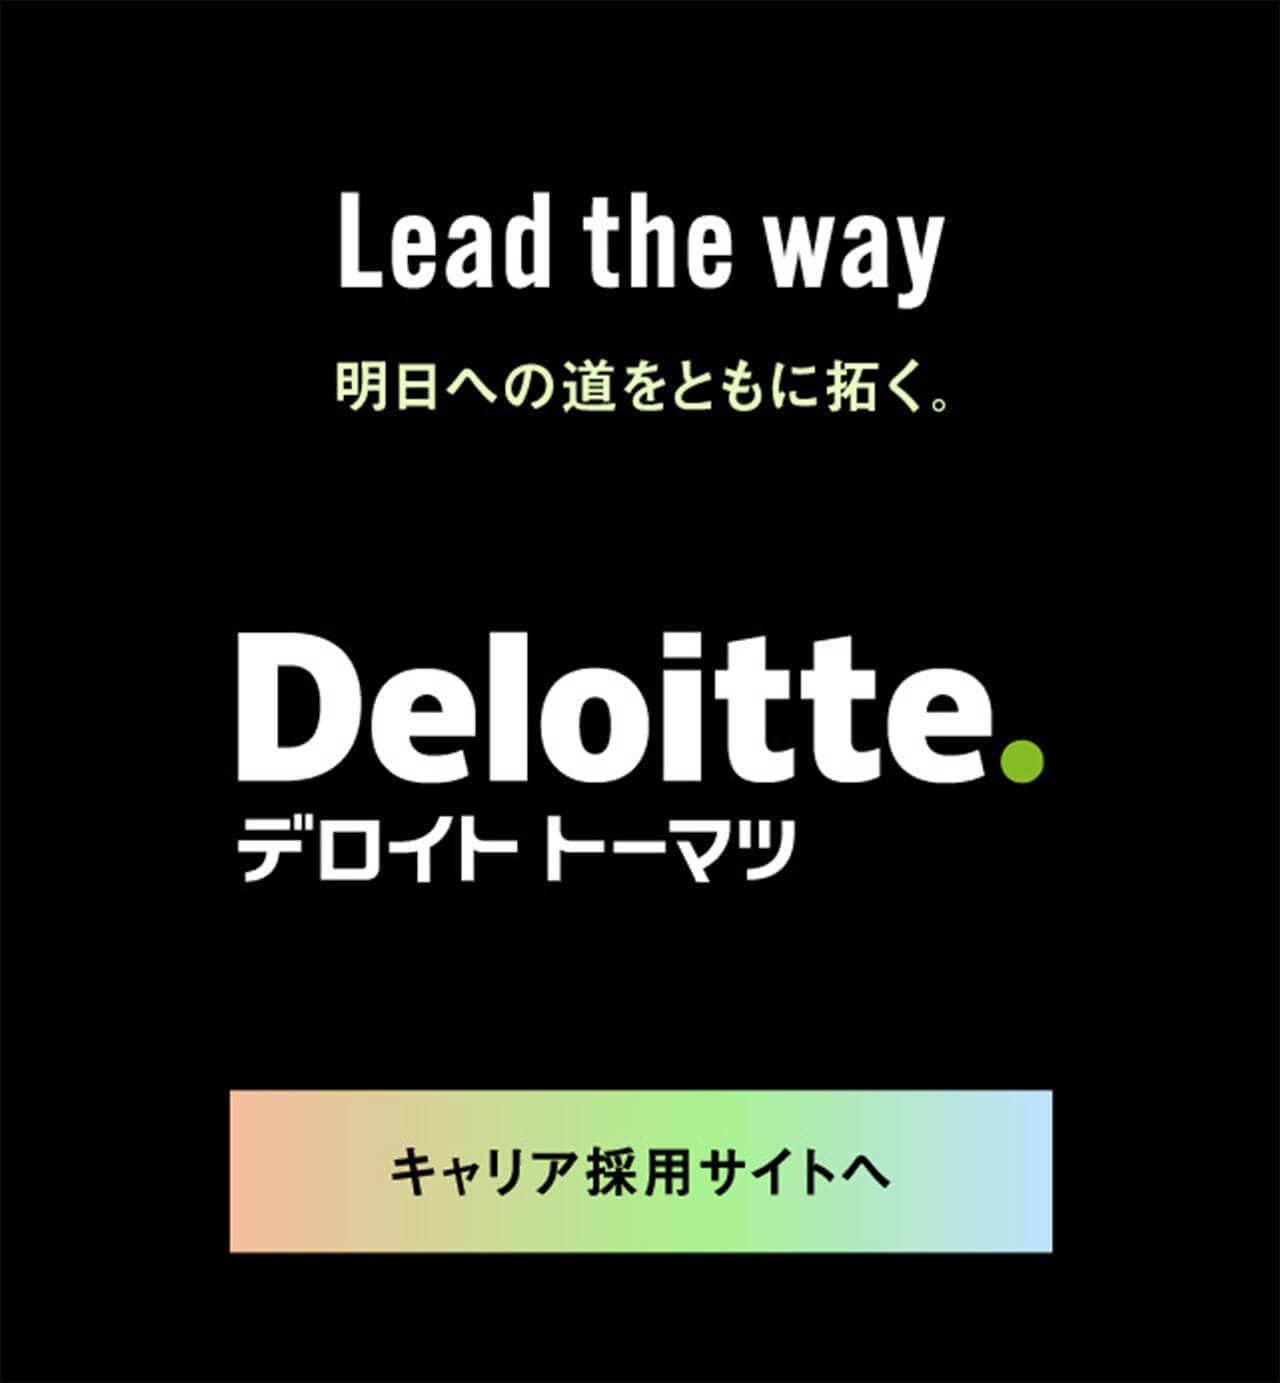 Lead the way 明日のへ道をともに拓く。　Deloitte.デロイト トーマツ　キャリア採用サイトへ